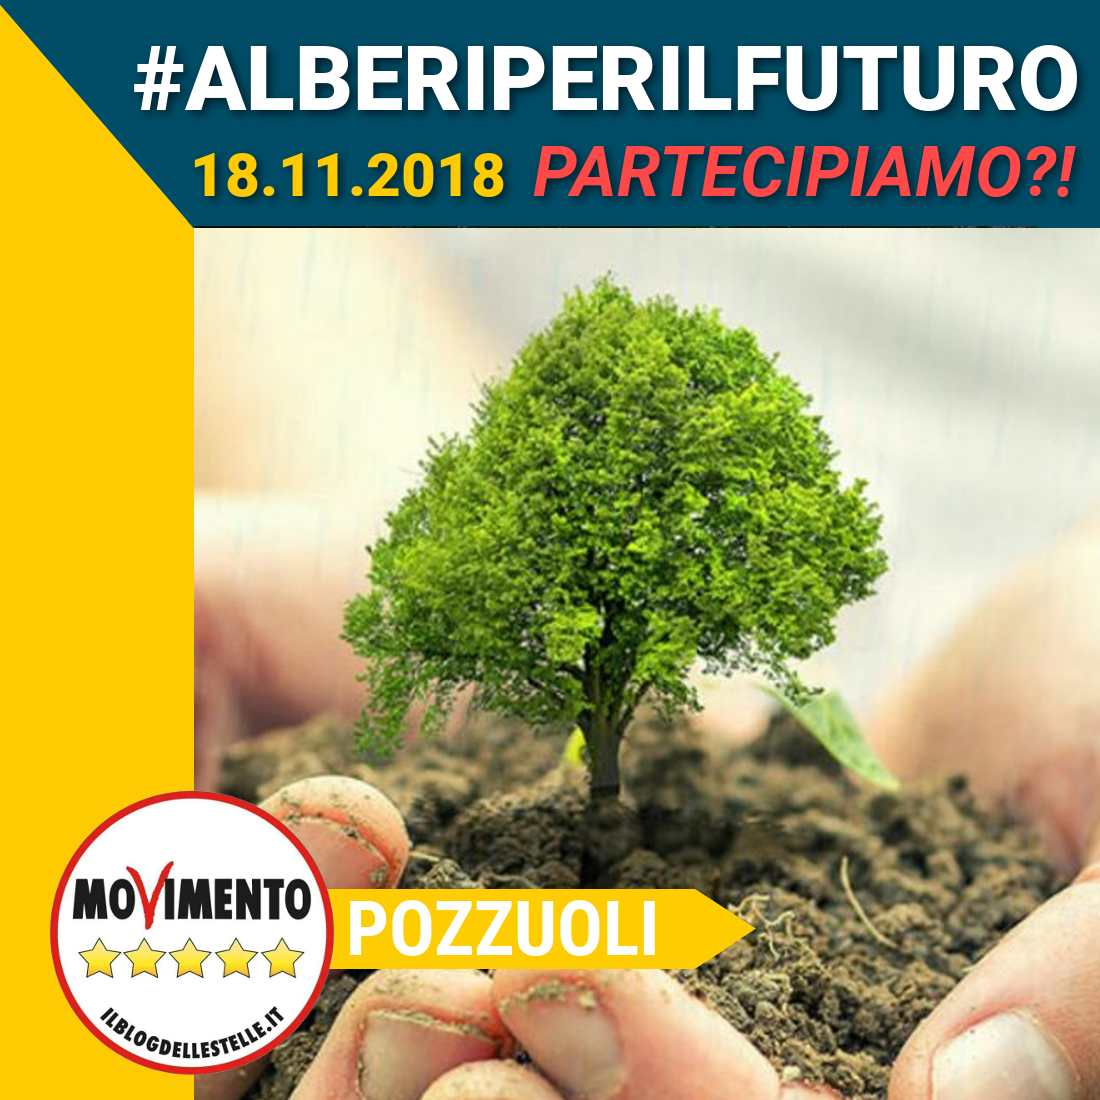 Il M5S lancia l’iniziativa a Pozzuoli “Alberi per il futuro”